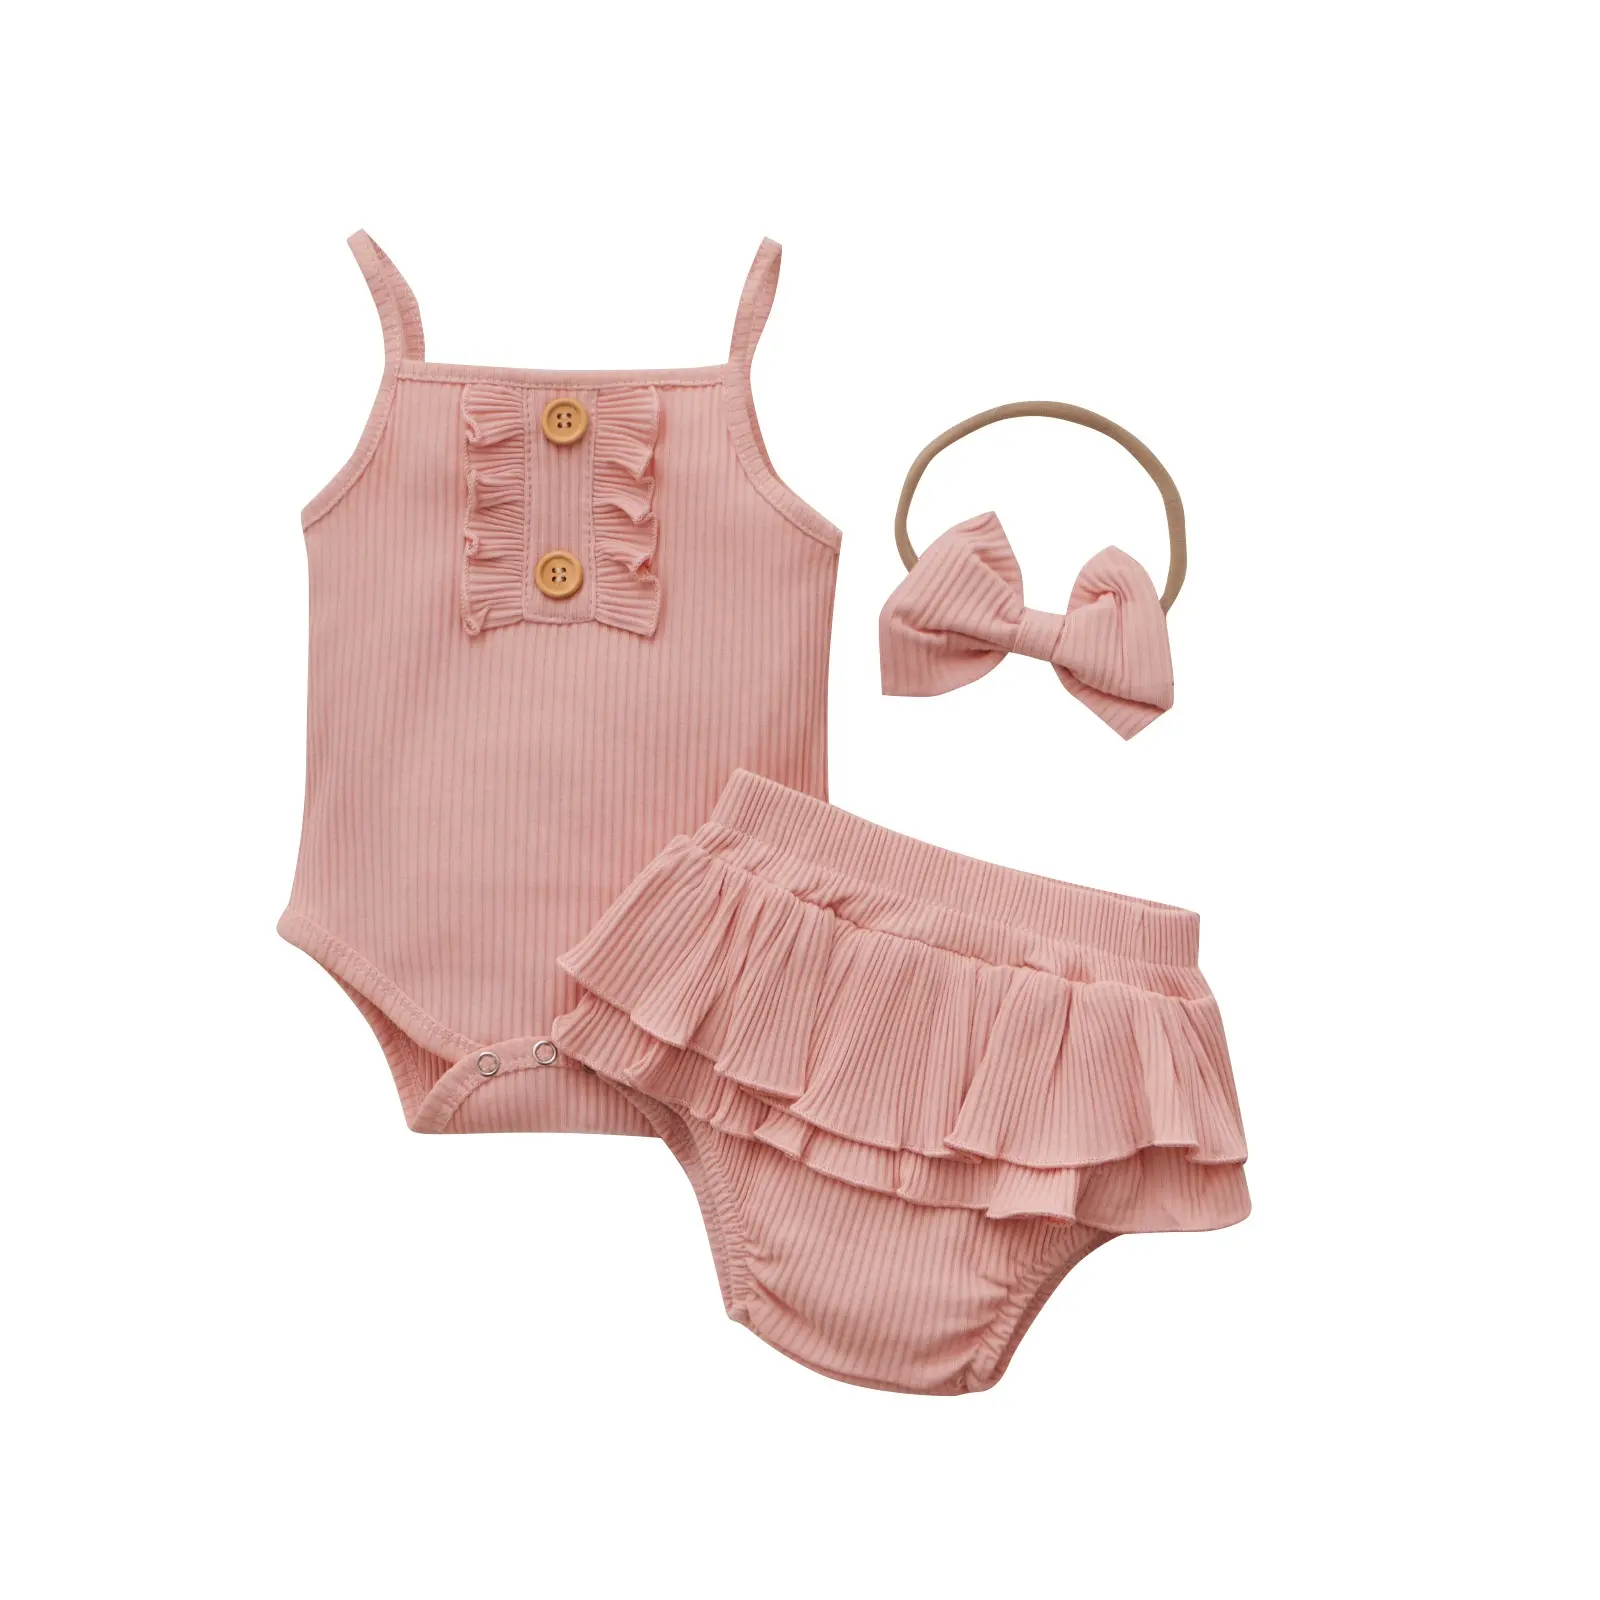 Conjuntos de roupas de bebê, conjuntos de roupas infantis de verão para crianças pequenas, macacão rosa com calções de babado, sem mangas